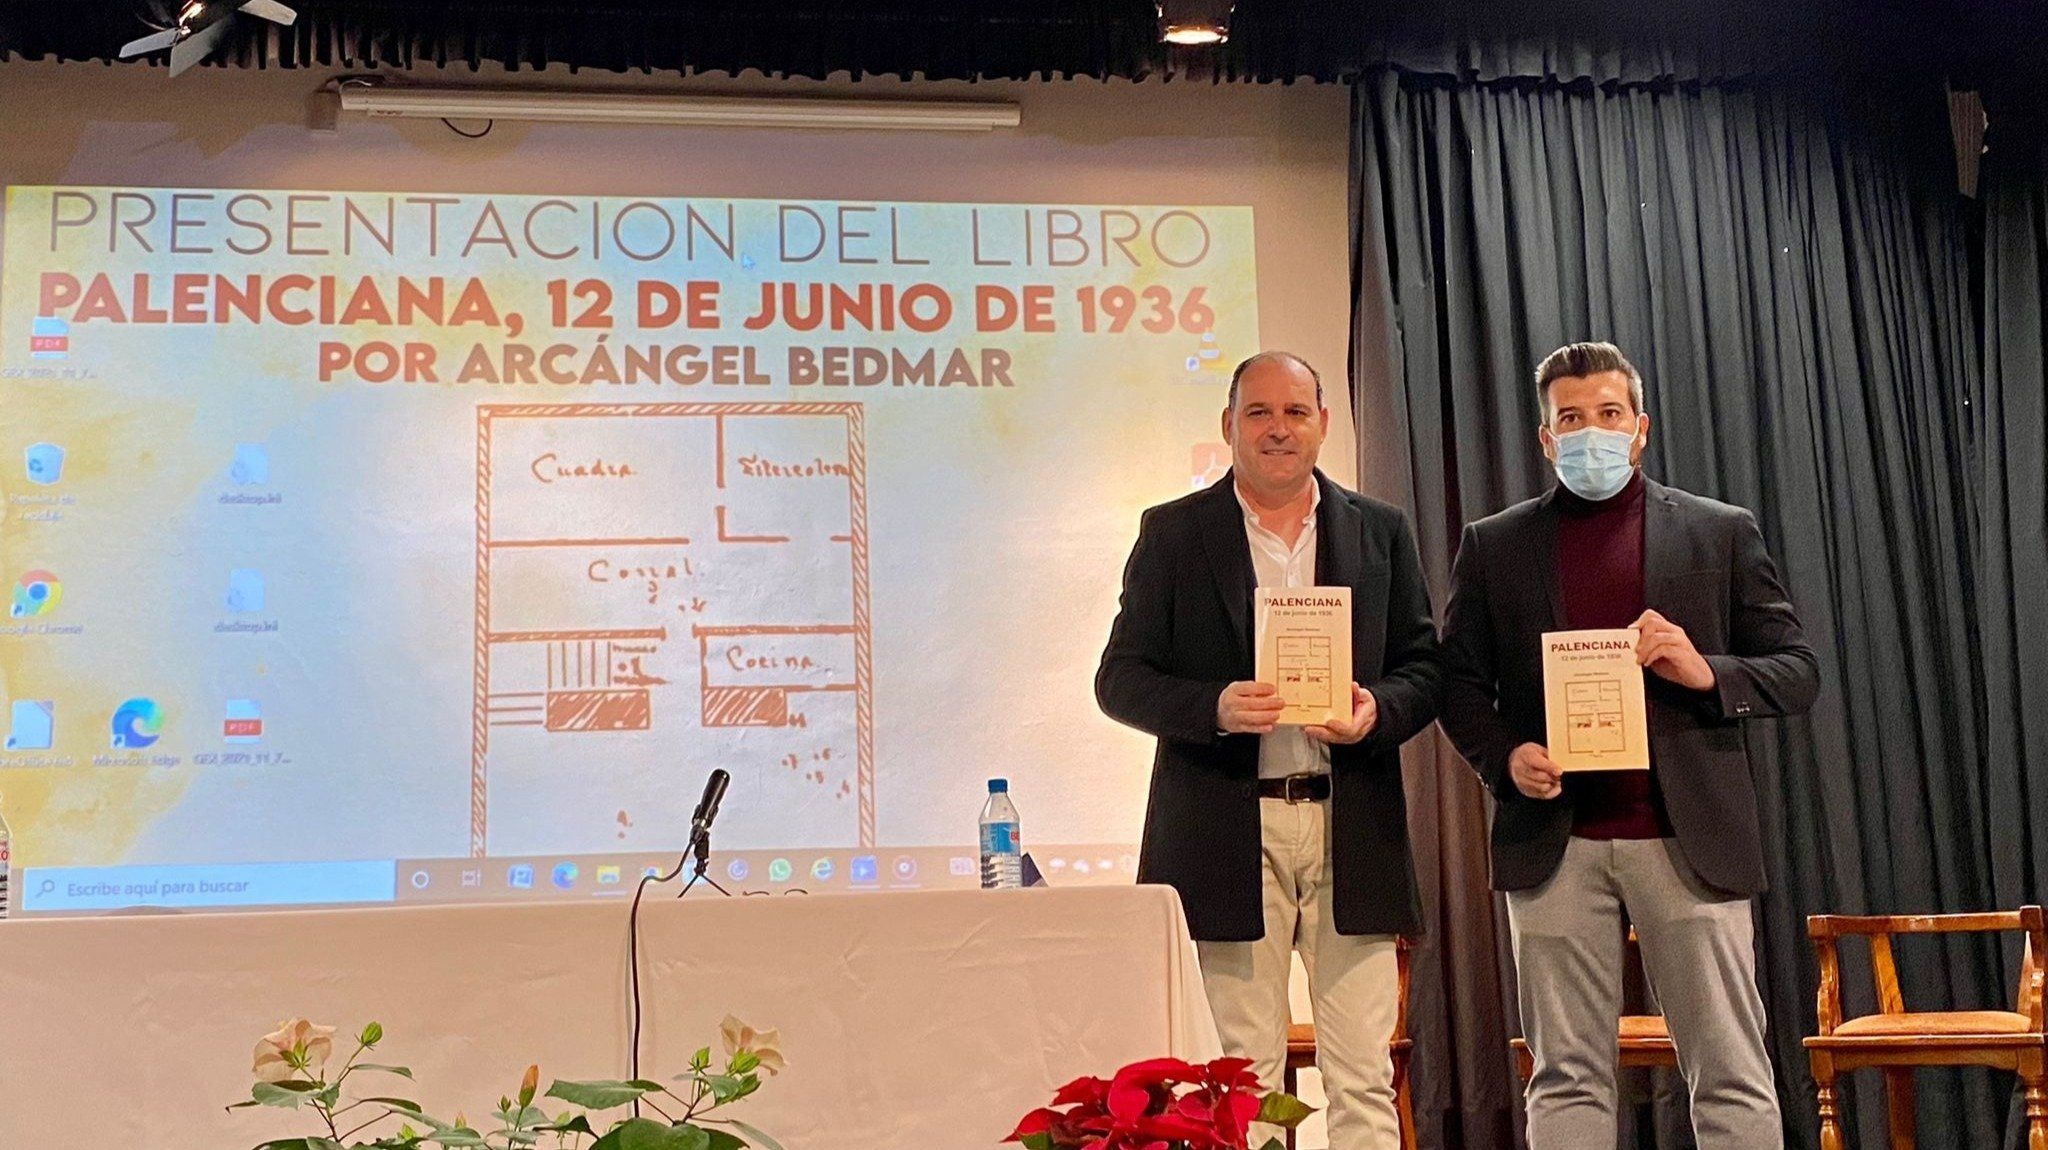  Arcángel Bedmar y Gonzalo Ariza en la presentación del libro "Palenciana, 12 de junio 1936" 